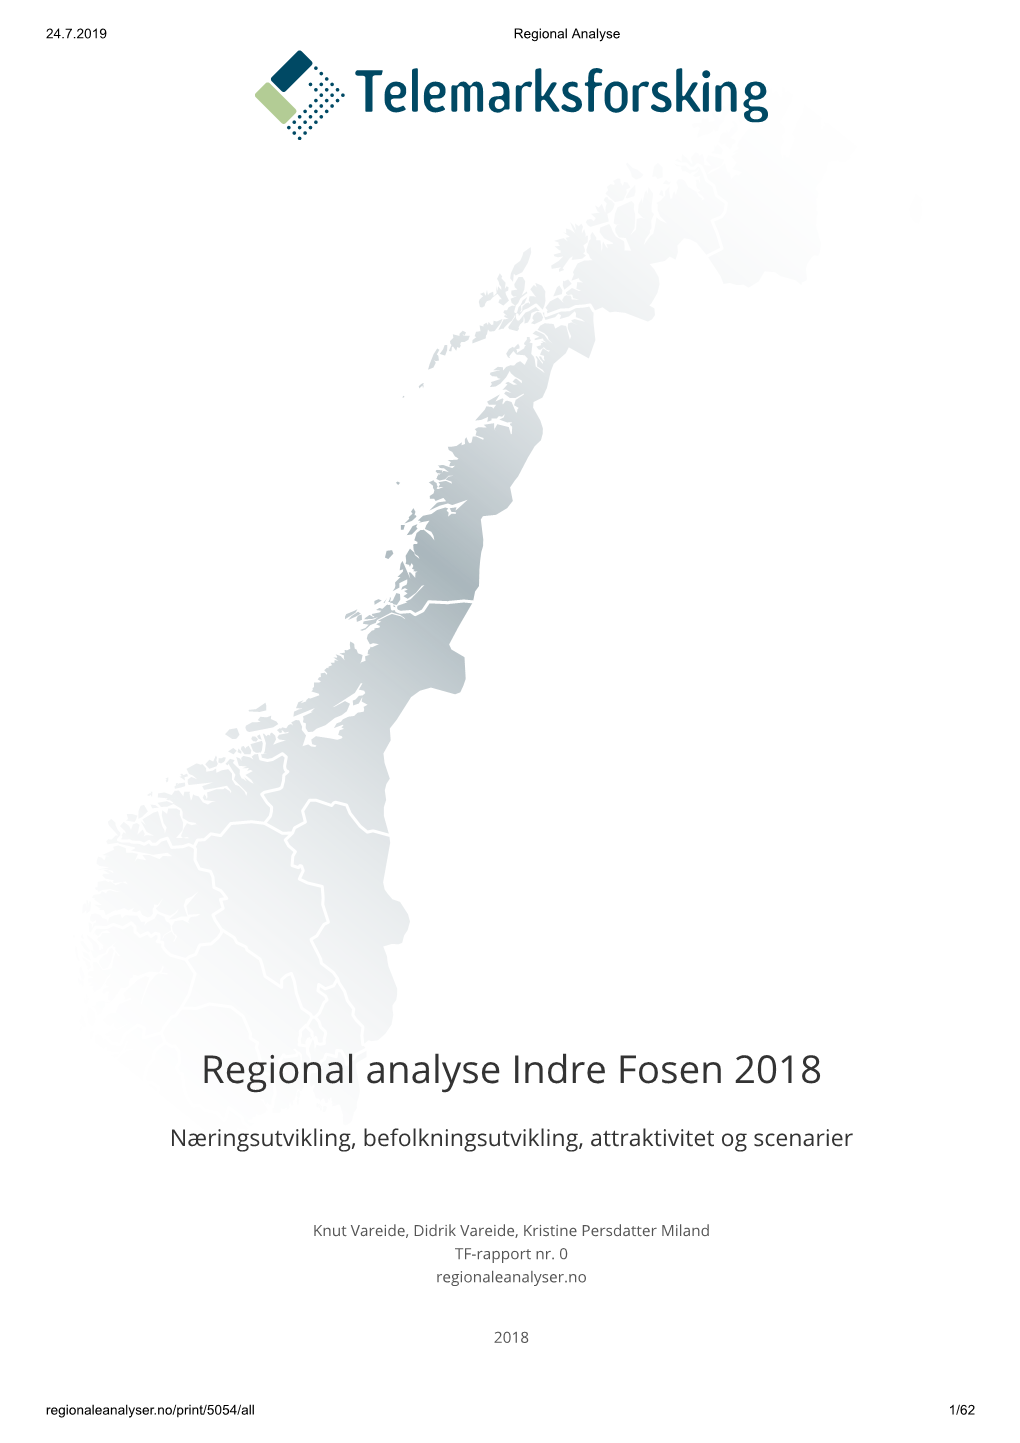 Regional Analyse Indre Fosen 2018